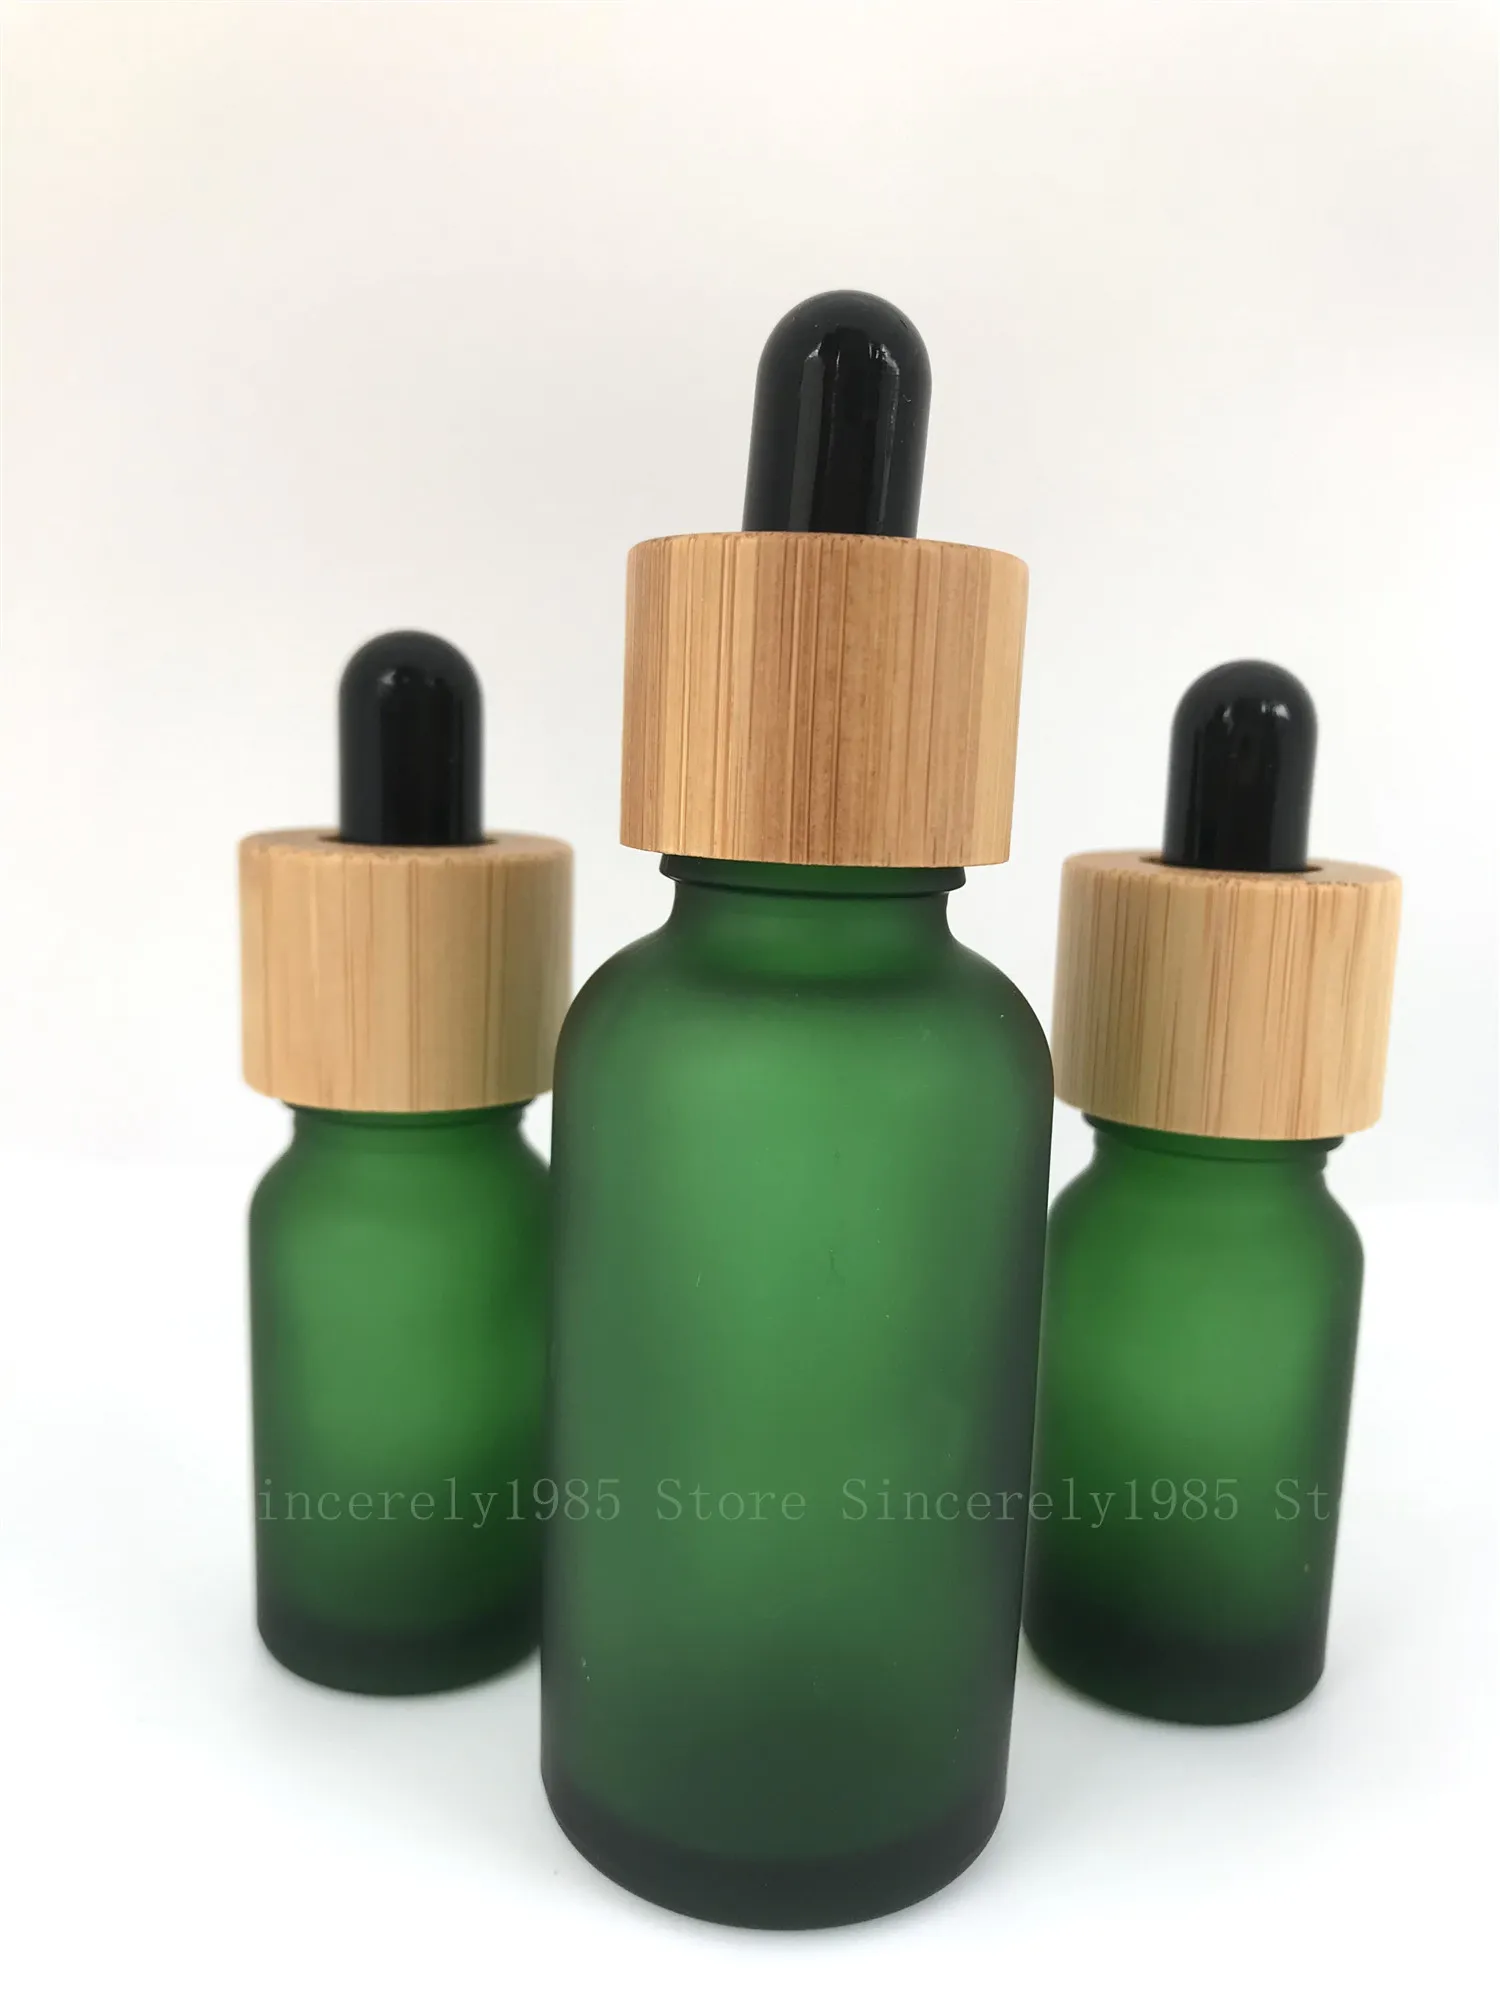 5ml 10ml 15ml 30mlの凍られたドロスペットボトル竹のふたのピペットボトルの詰め替え可能な高品質の厚い艶消しガラス